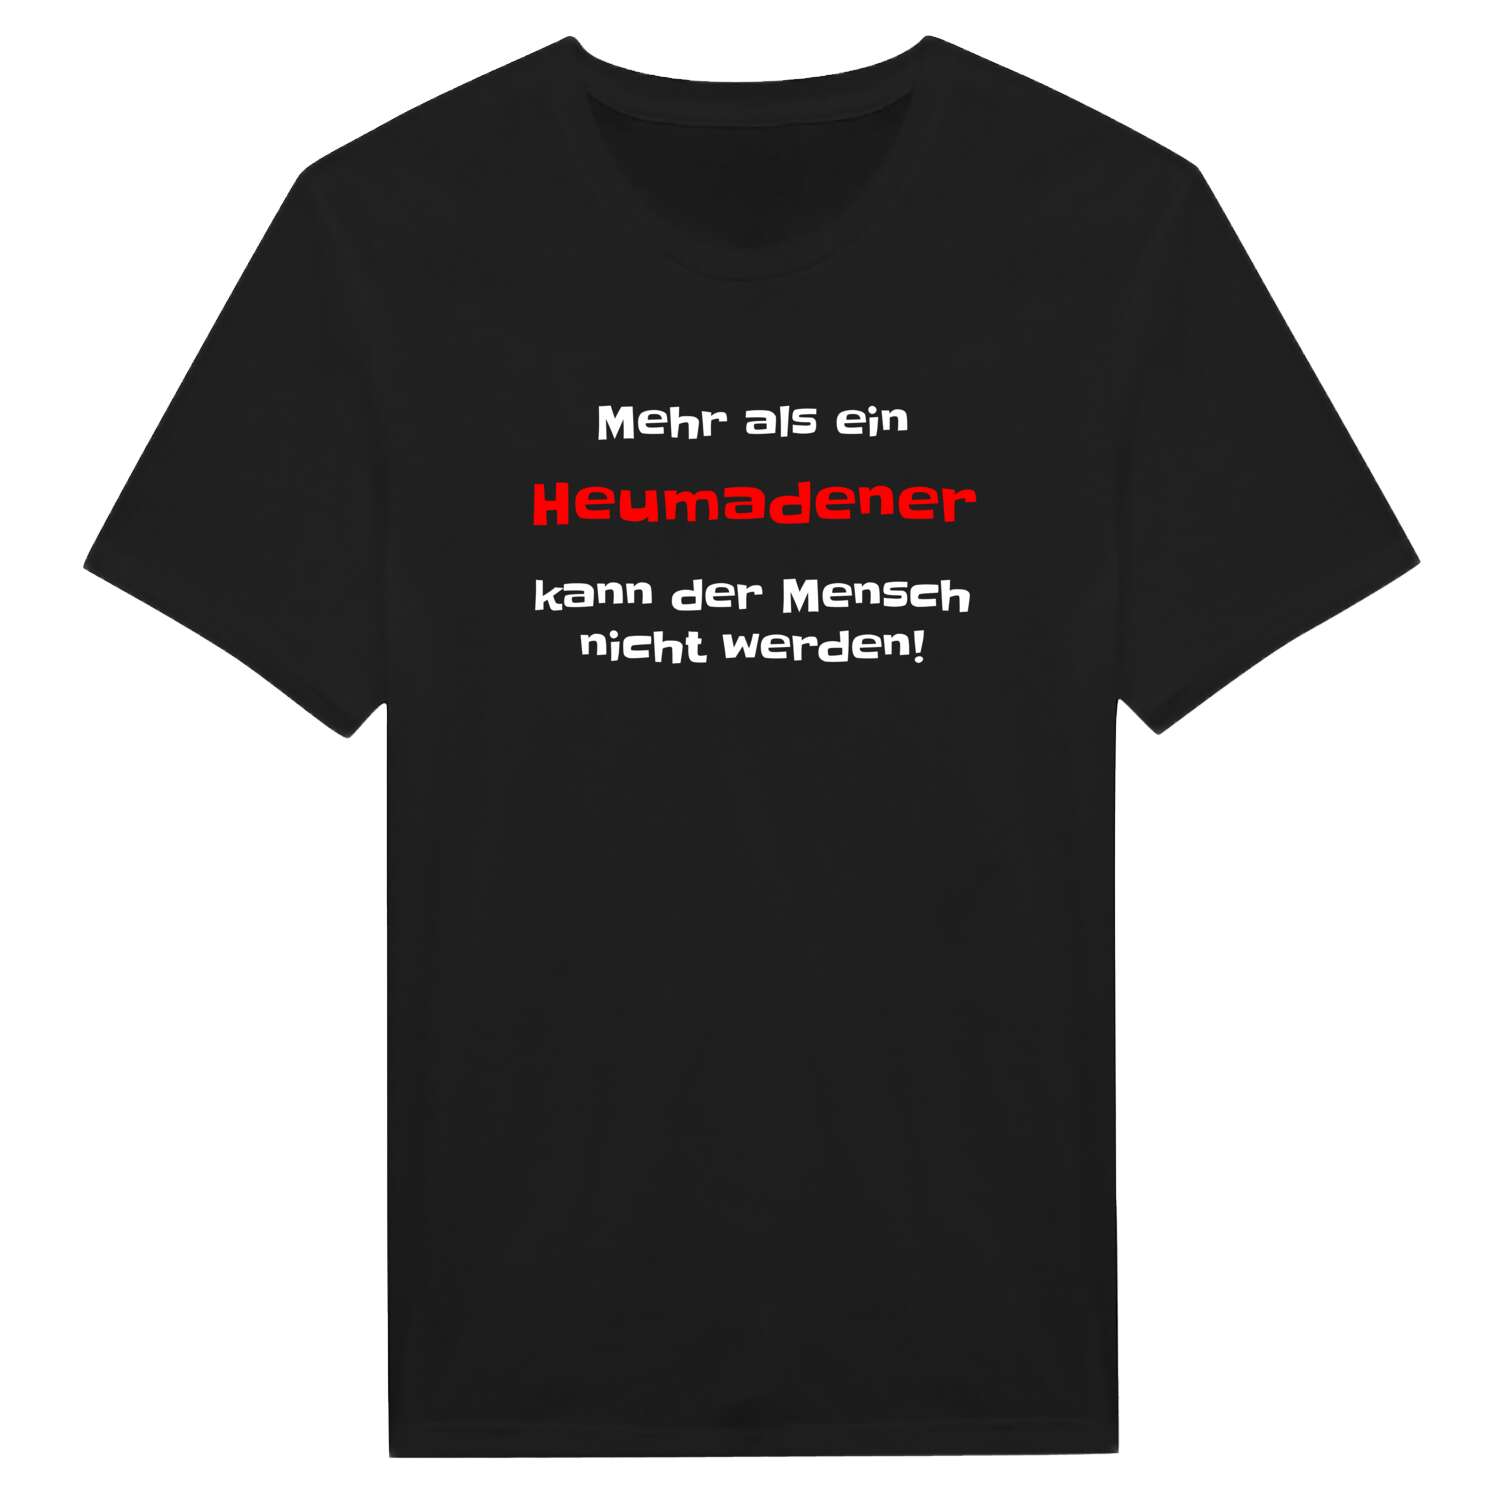 Heumaden T-Shirt »Mehr als ein«